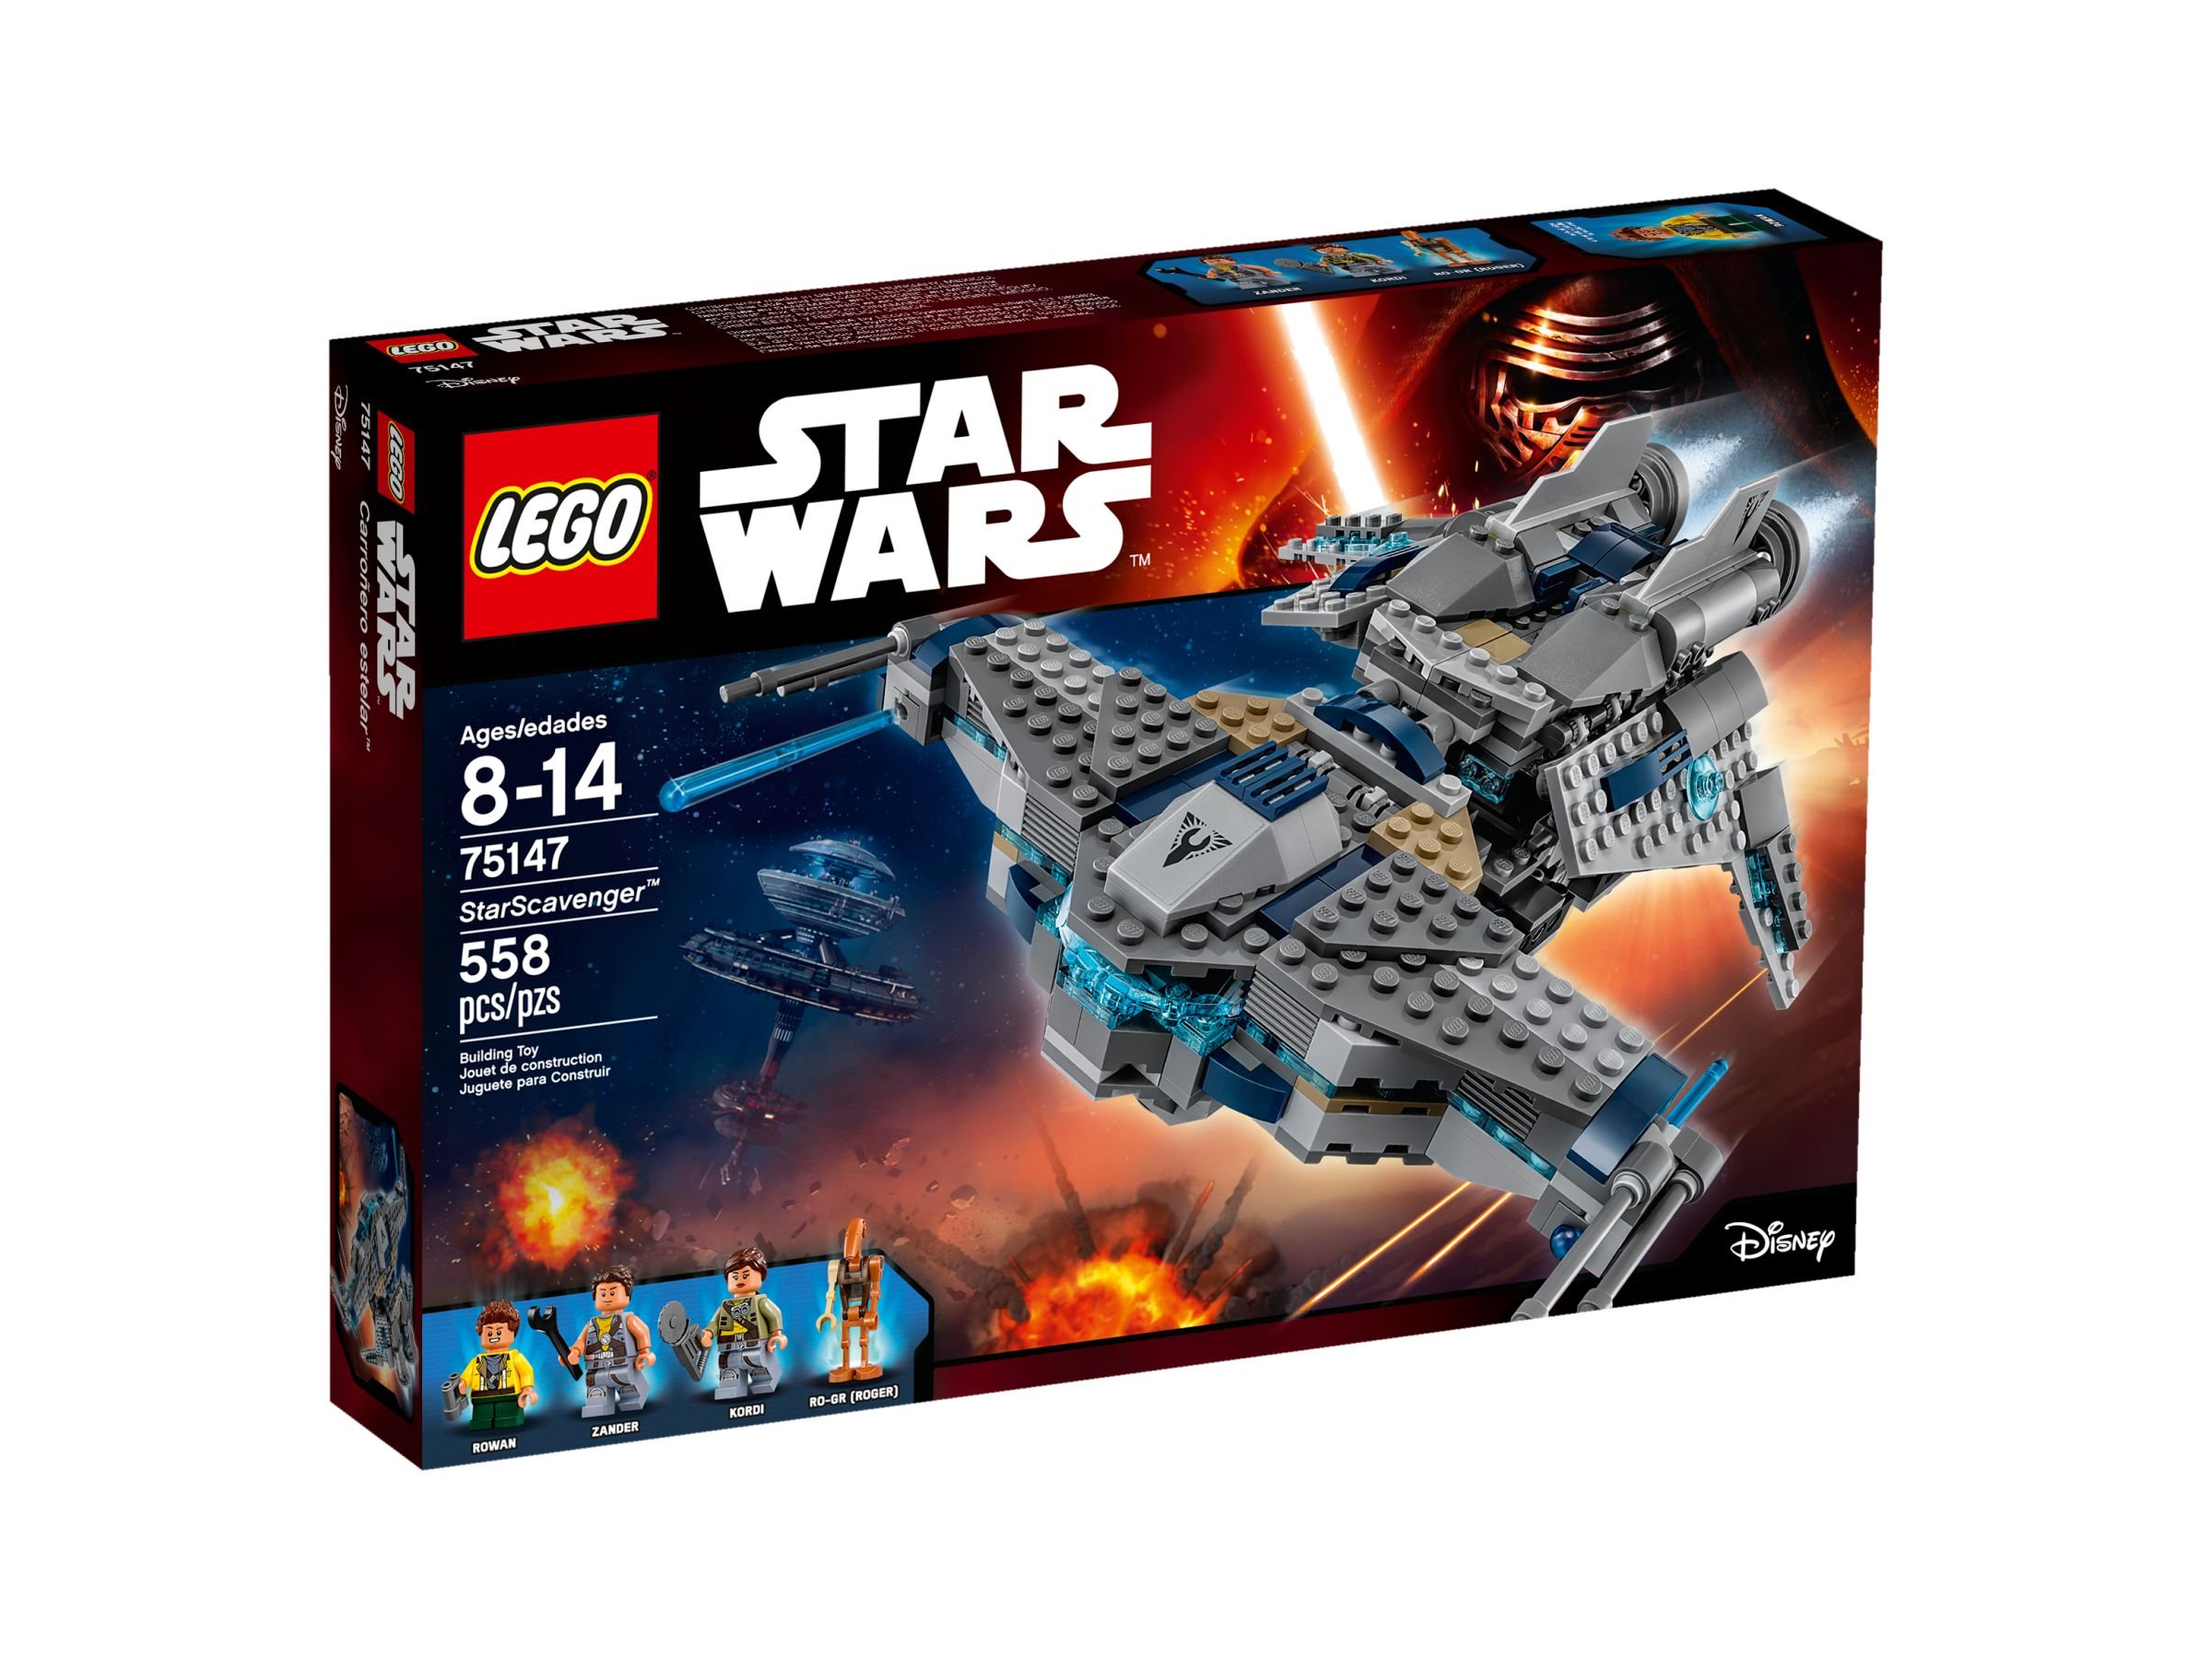 LEGO Star Wars 75147 StarScavenger™ LEGO_75147_alt1.jpg